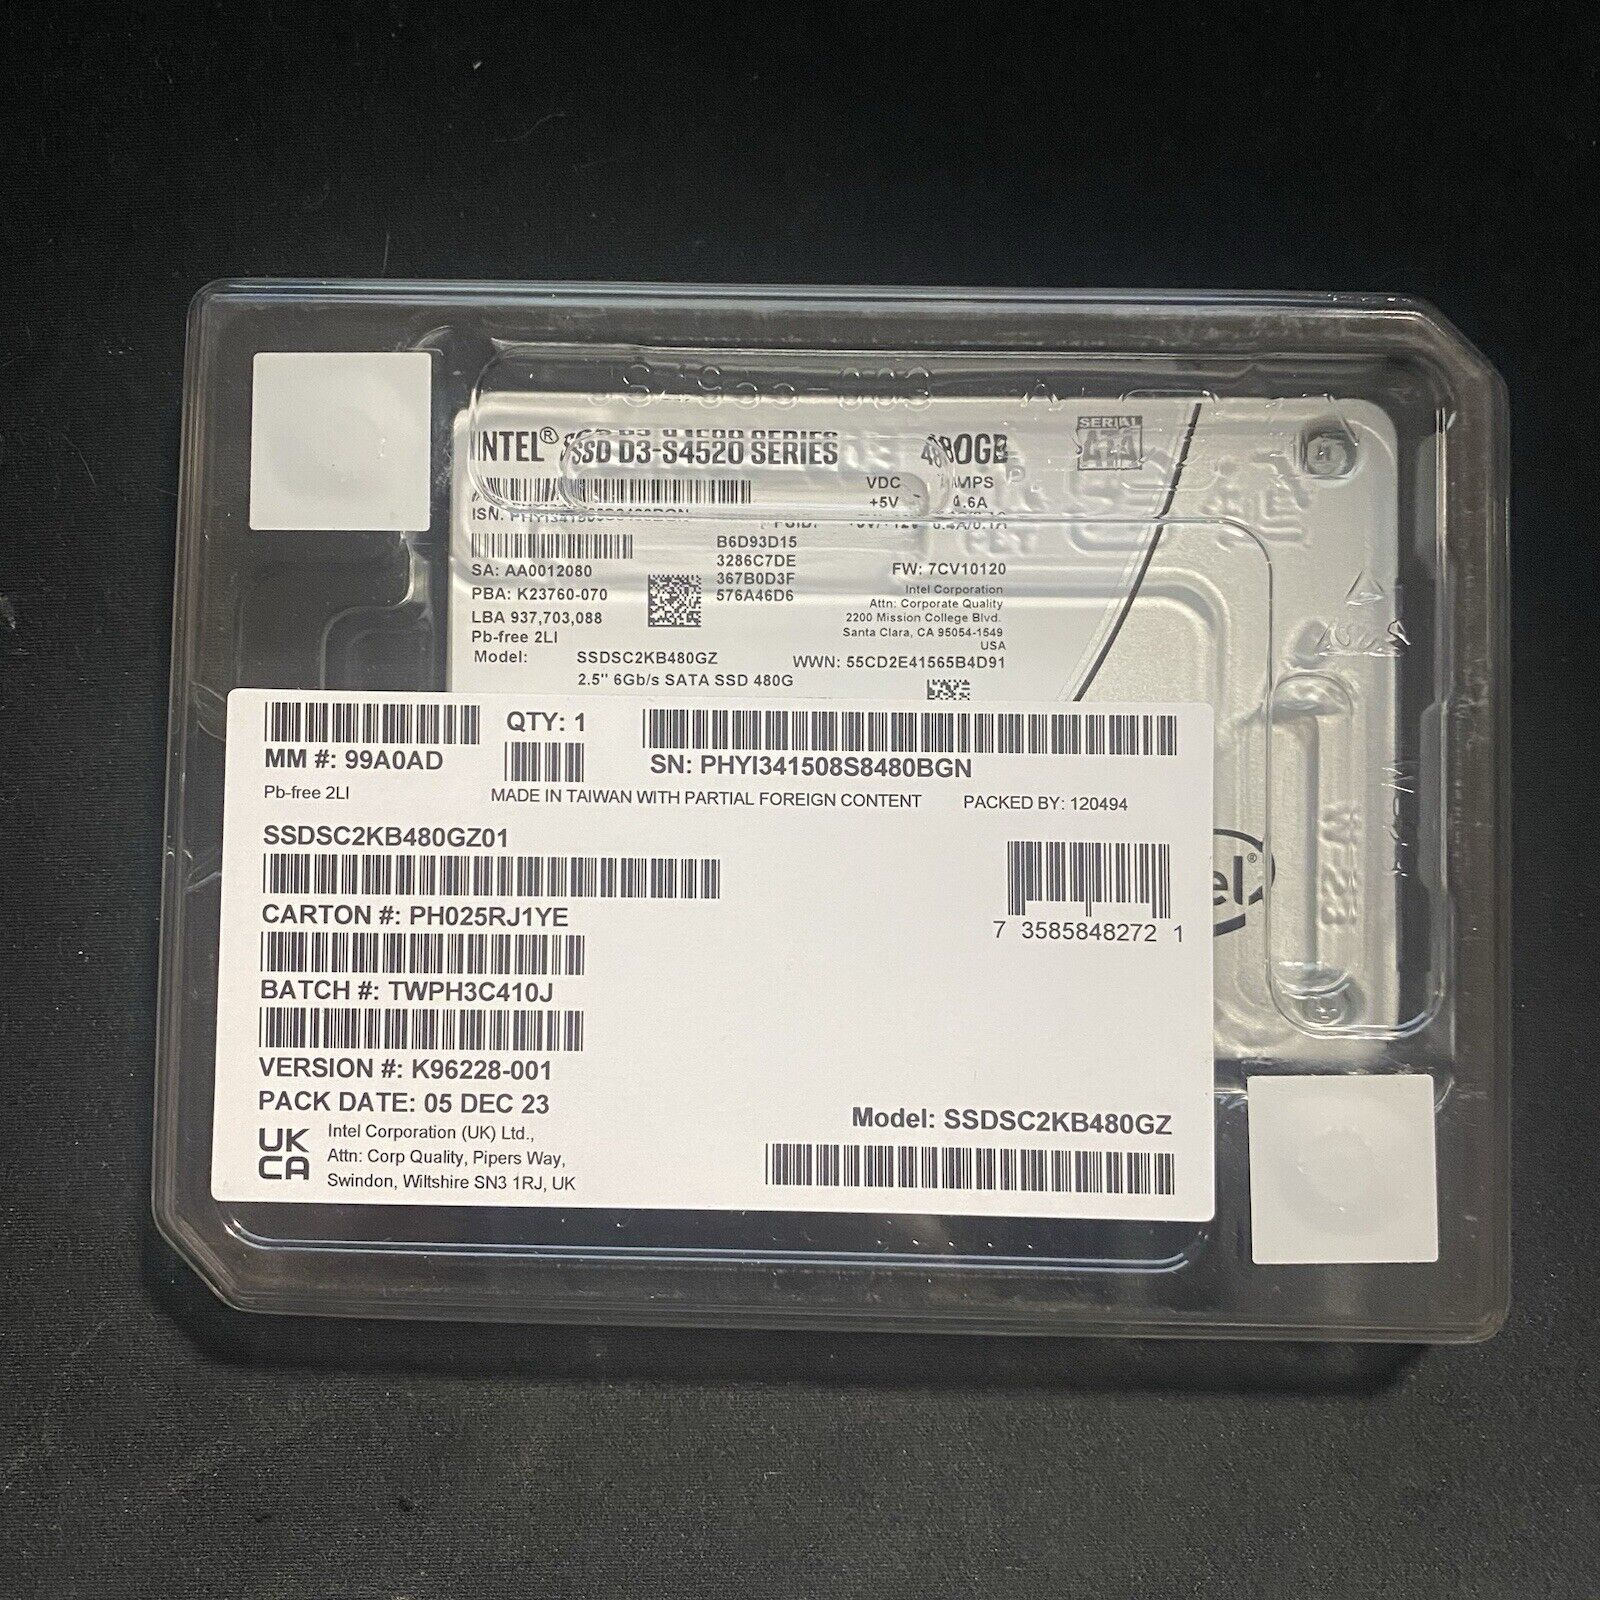 New (Sealed) 480GB Intel SSD D3-S4520 Series 2.5”  SSDSC2KB480GZ01